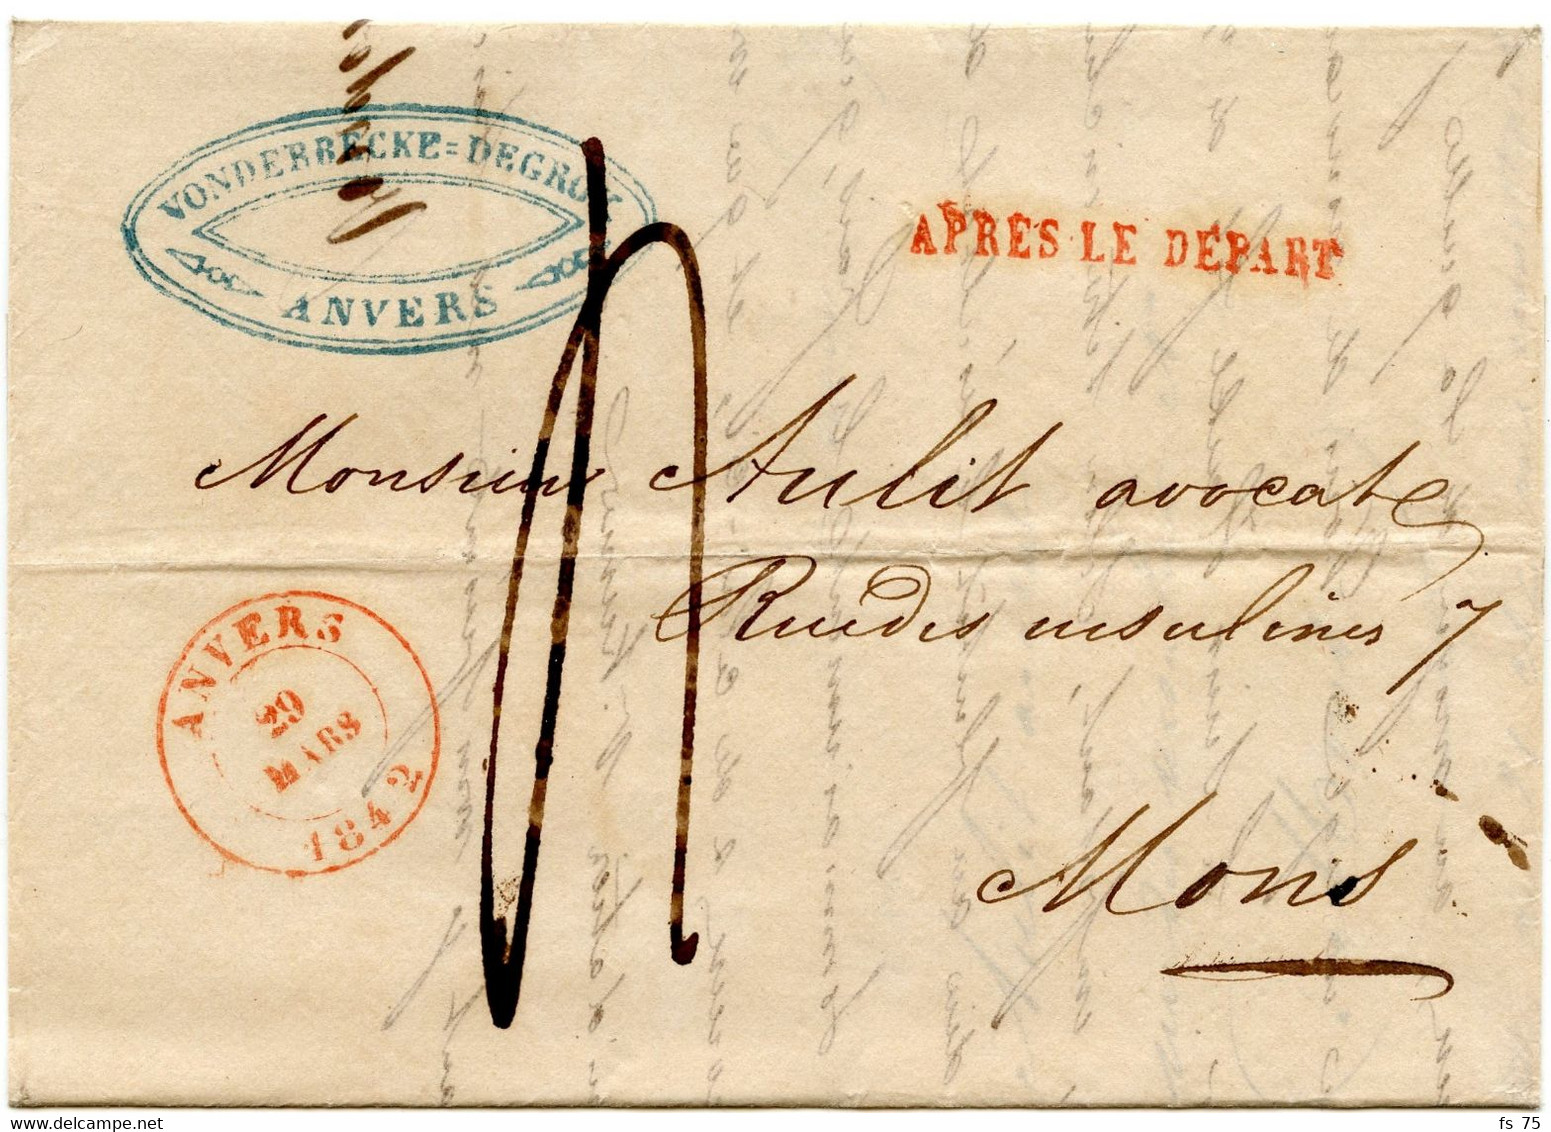 BELGIQUE - ANVERS + APRES LE DEPART SUR LETTRE AVEC CORRESPONDANCE, 1842 - 1830-1849 (Onafhankelijk België)